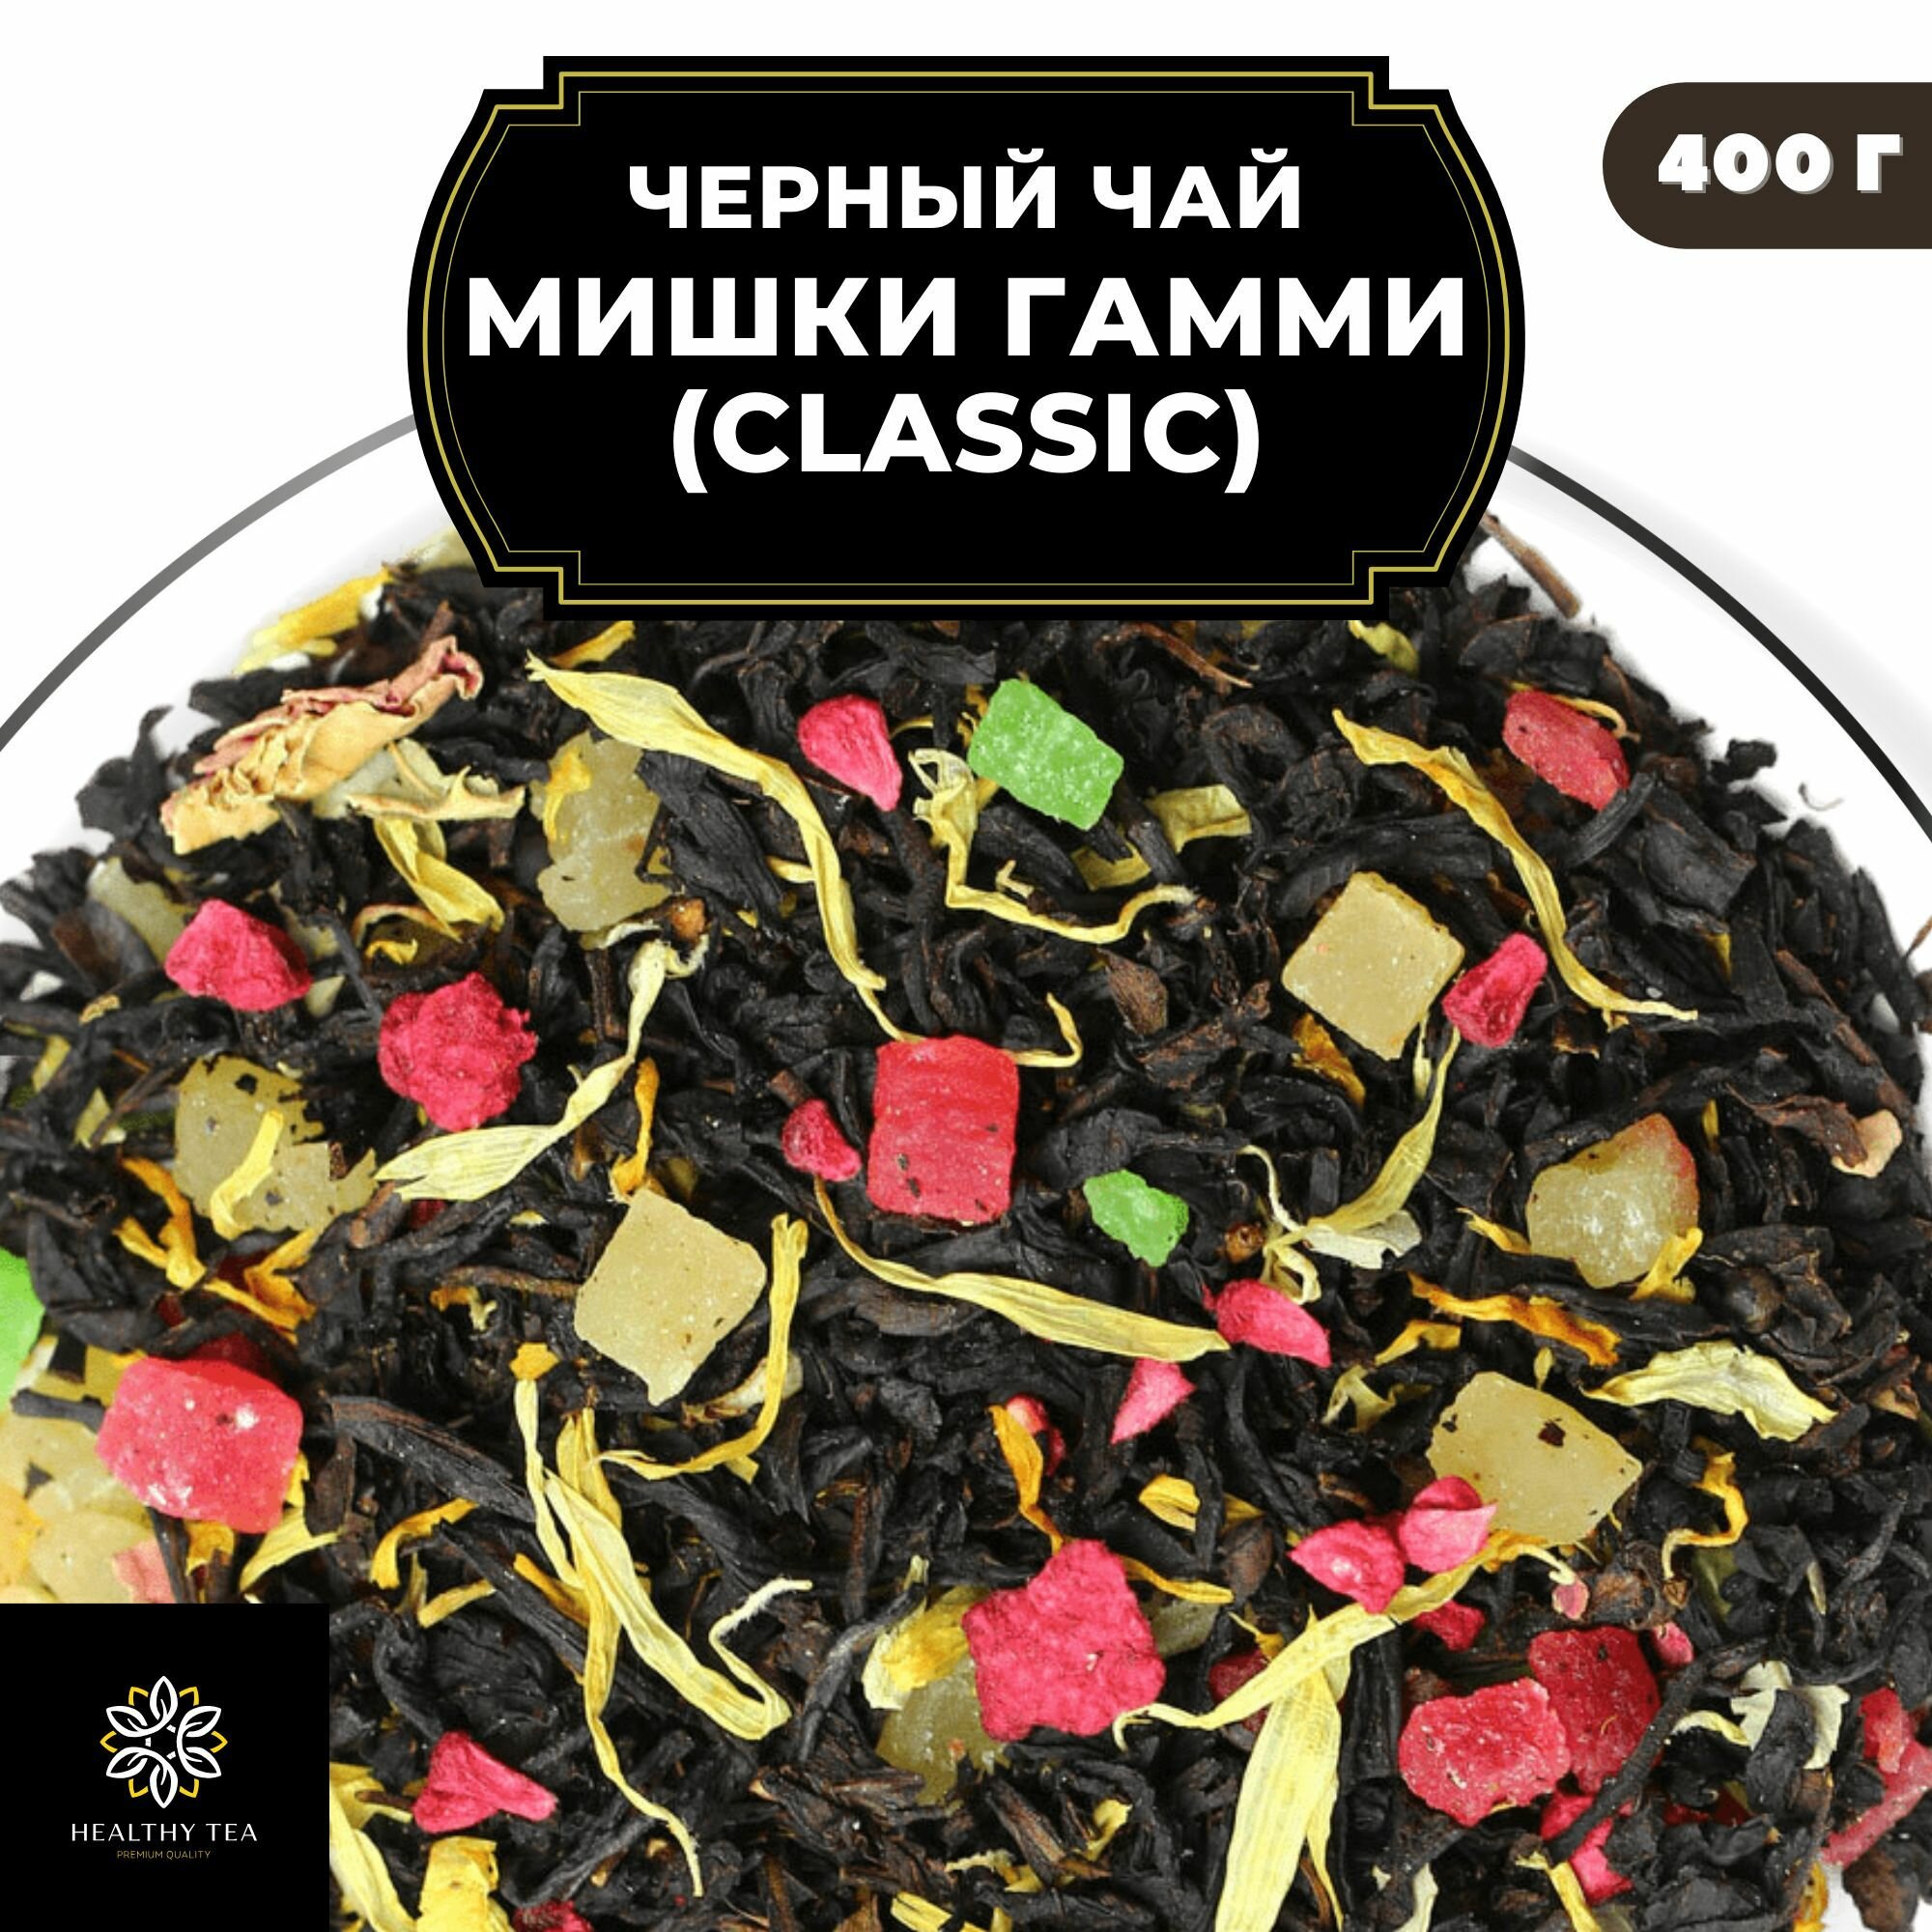 Цейлонский Черный чай с малиной, ананасом, розой и календулой "Мишки Гамми" (Classic) Полезный чай / HEALTHY TEA, 400 гр